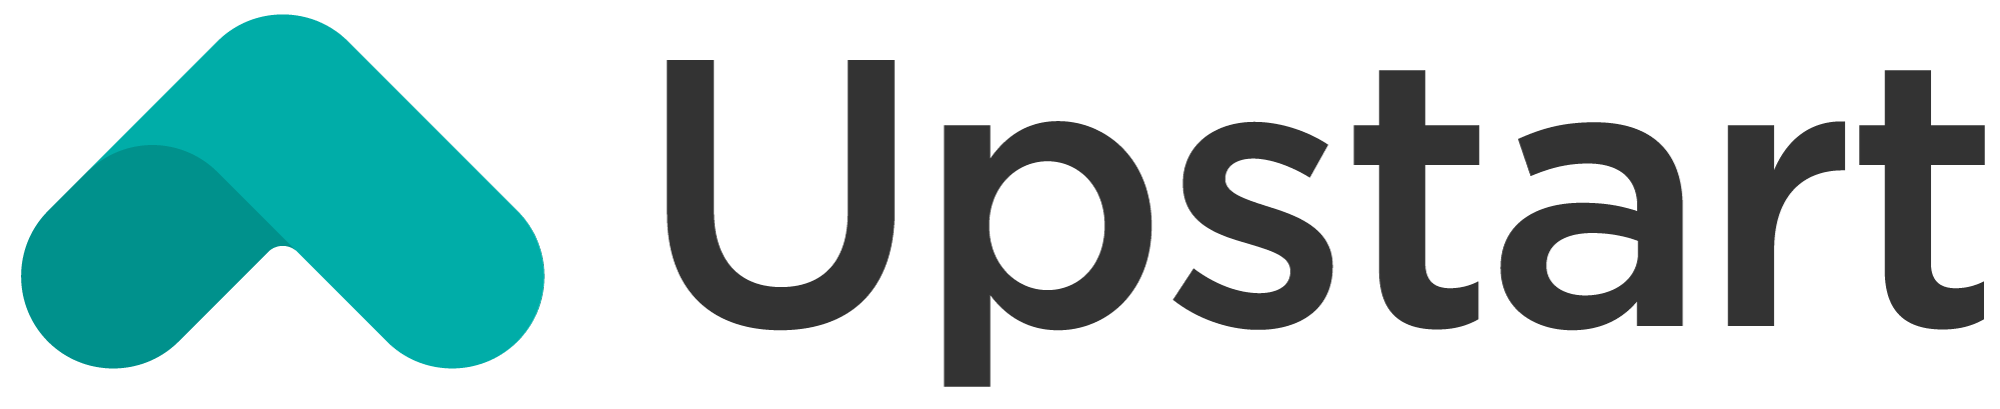 Upstart Auto Refinance logo